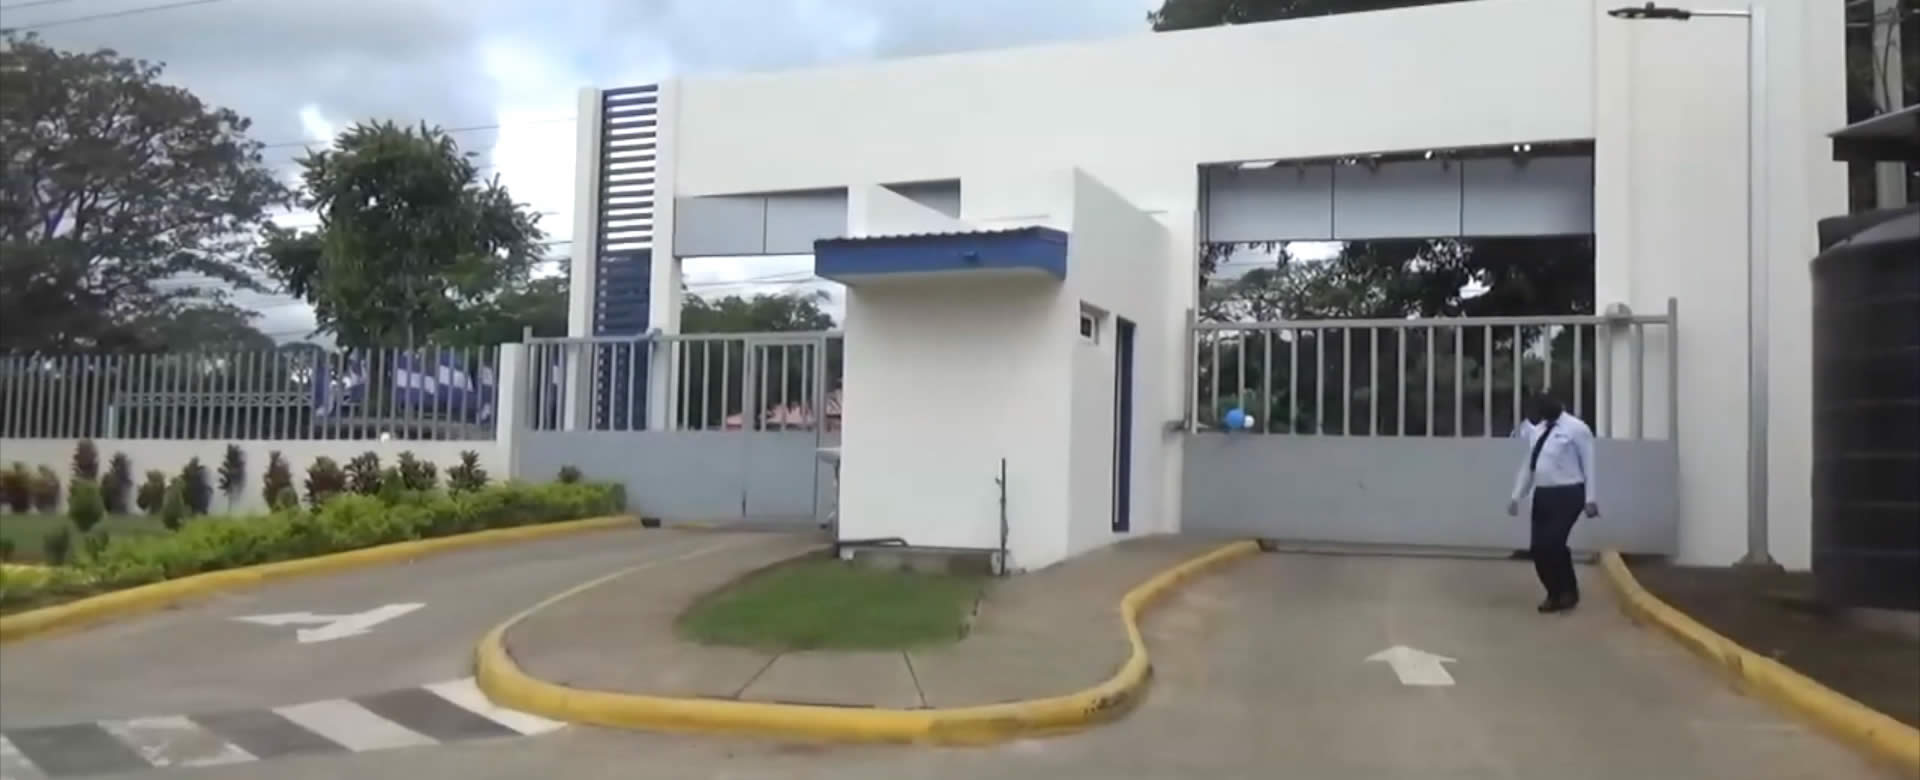 Invierten 140 millones de córdobas en nuevo complejo judicial en Carazo